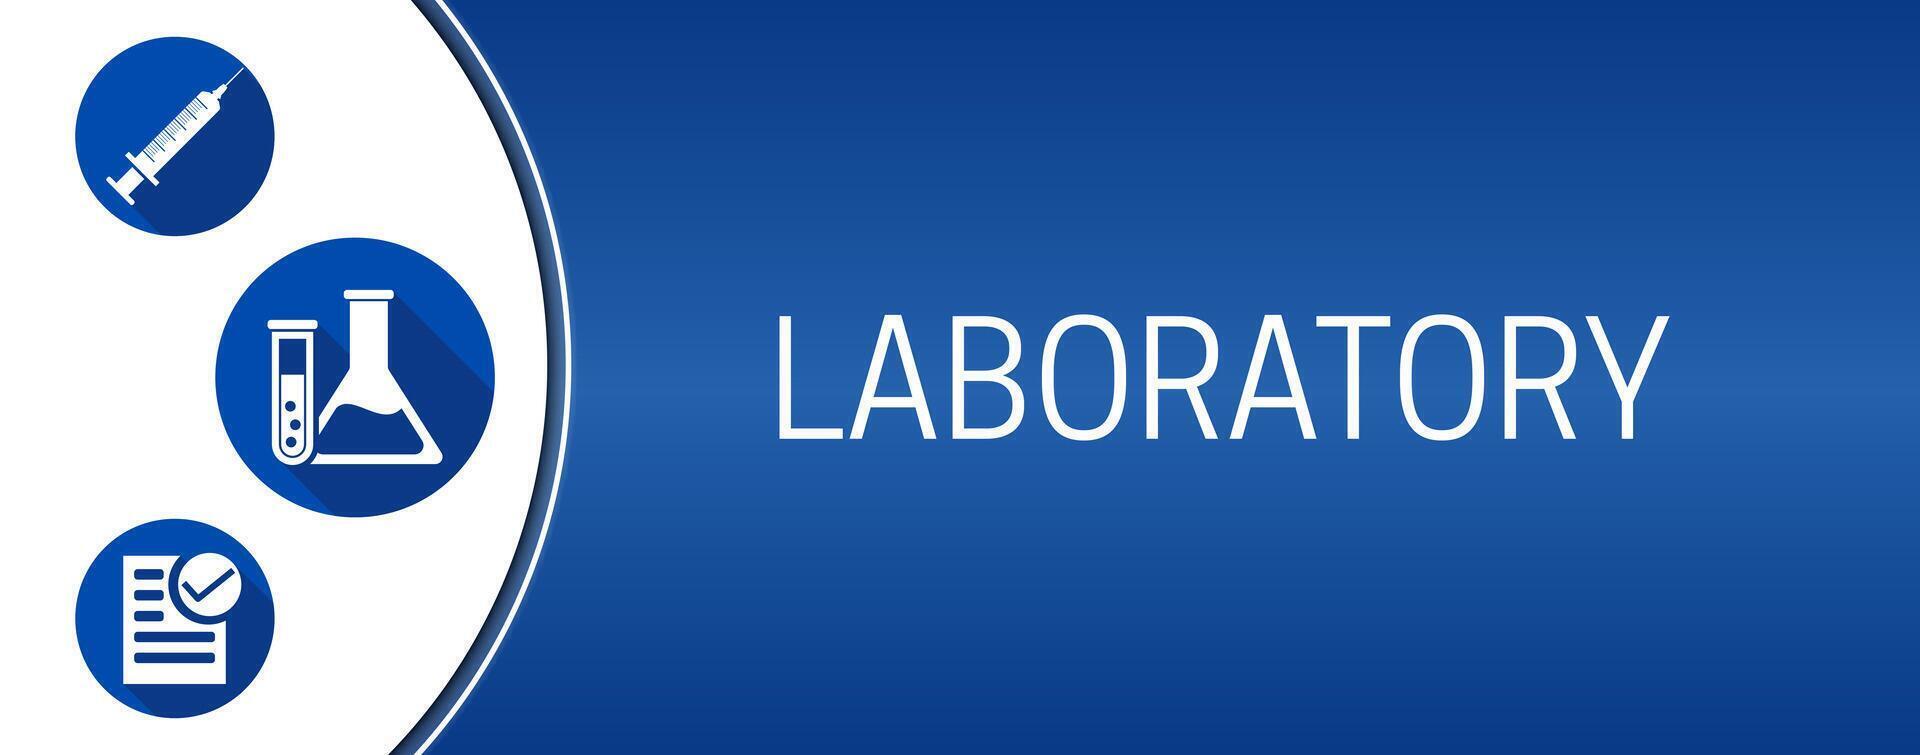 blå laboratorium bakgrund illustration baner med ikoner vektor